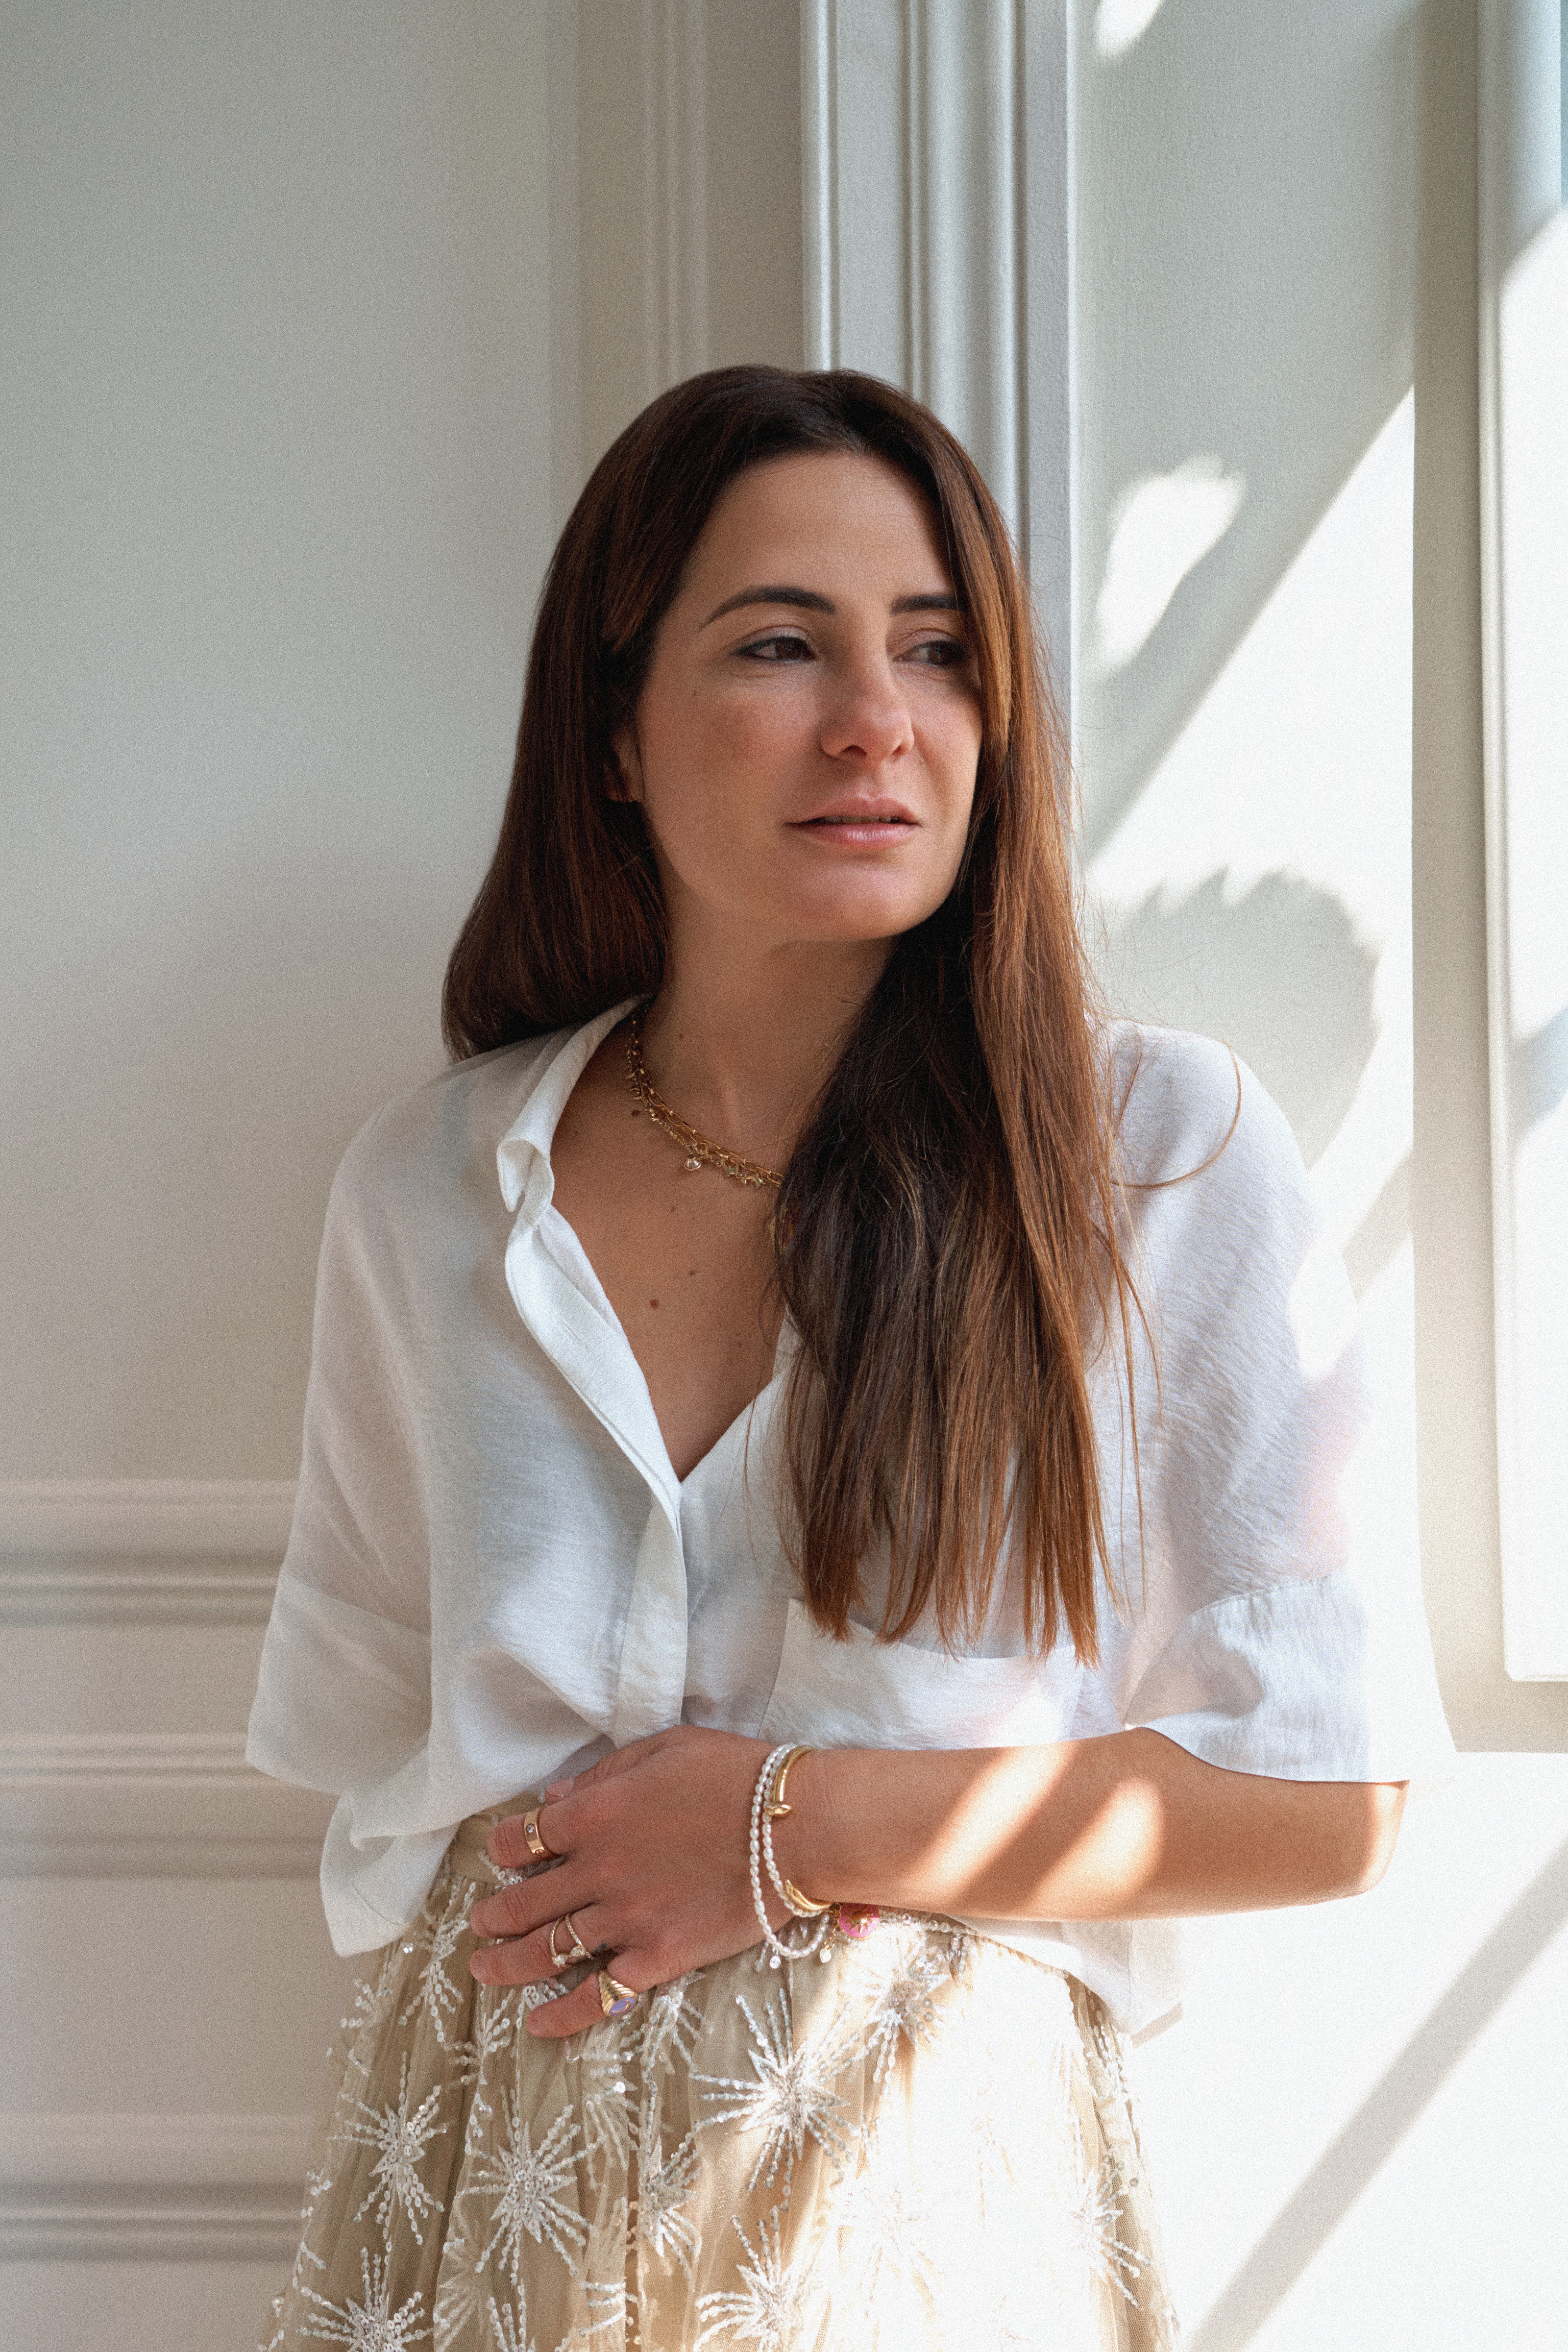 Wilhelmina García, la marca de joyas española que adoran fuera: "Por fin nos conocen aquí; era algo que quería cambiar"